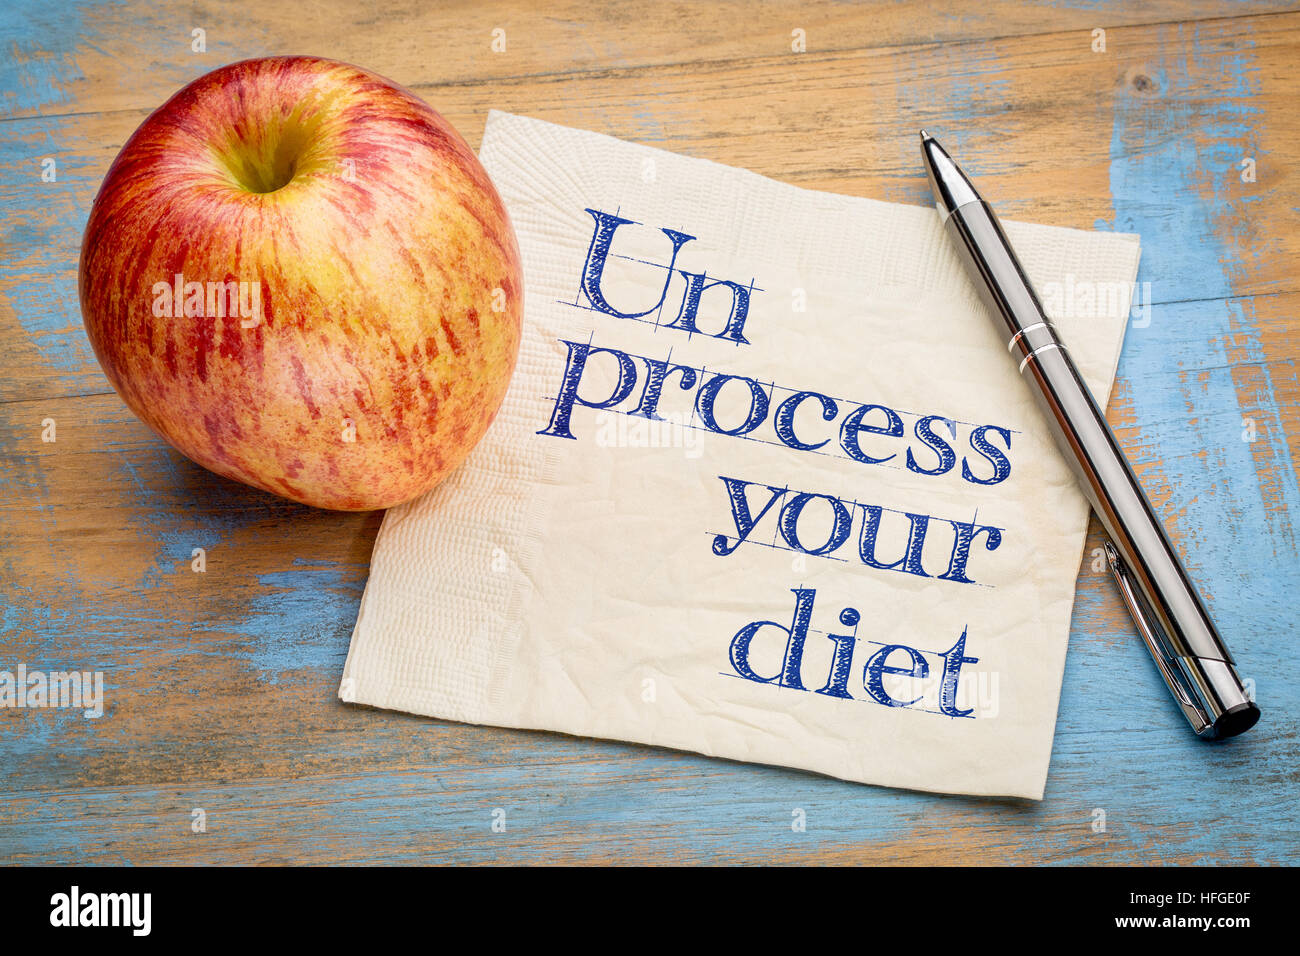 Ihre Diät - gesunde Ernährung Konzept - Handschrift auf einer Serviette mit Apple unprocess Stockfoto